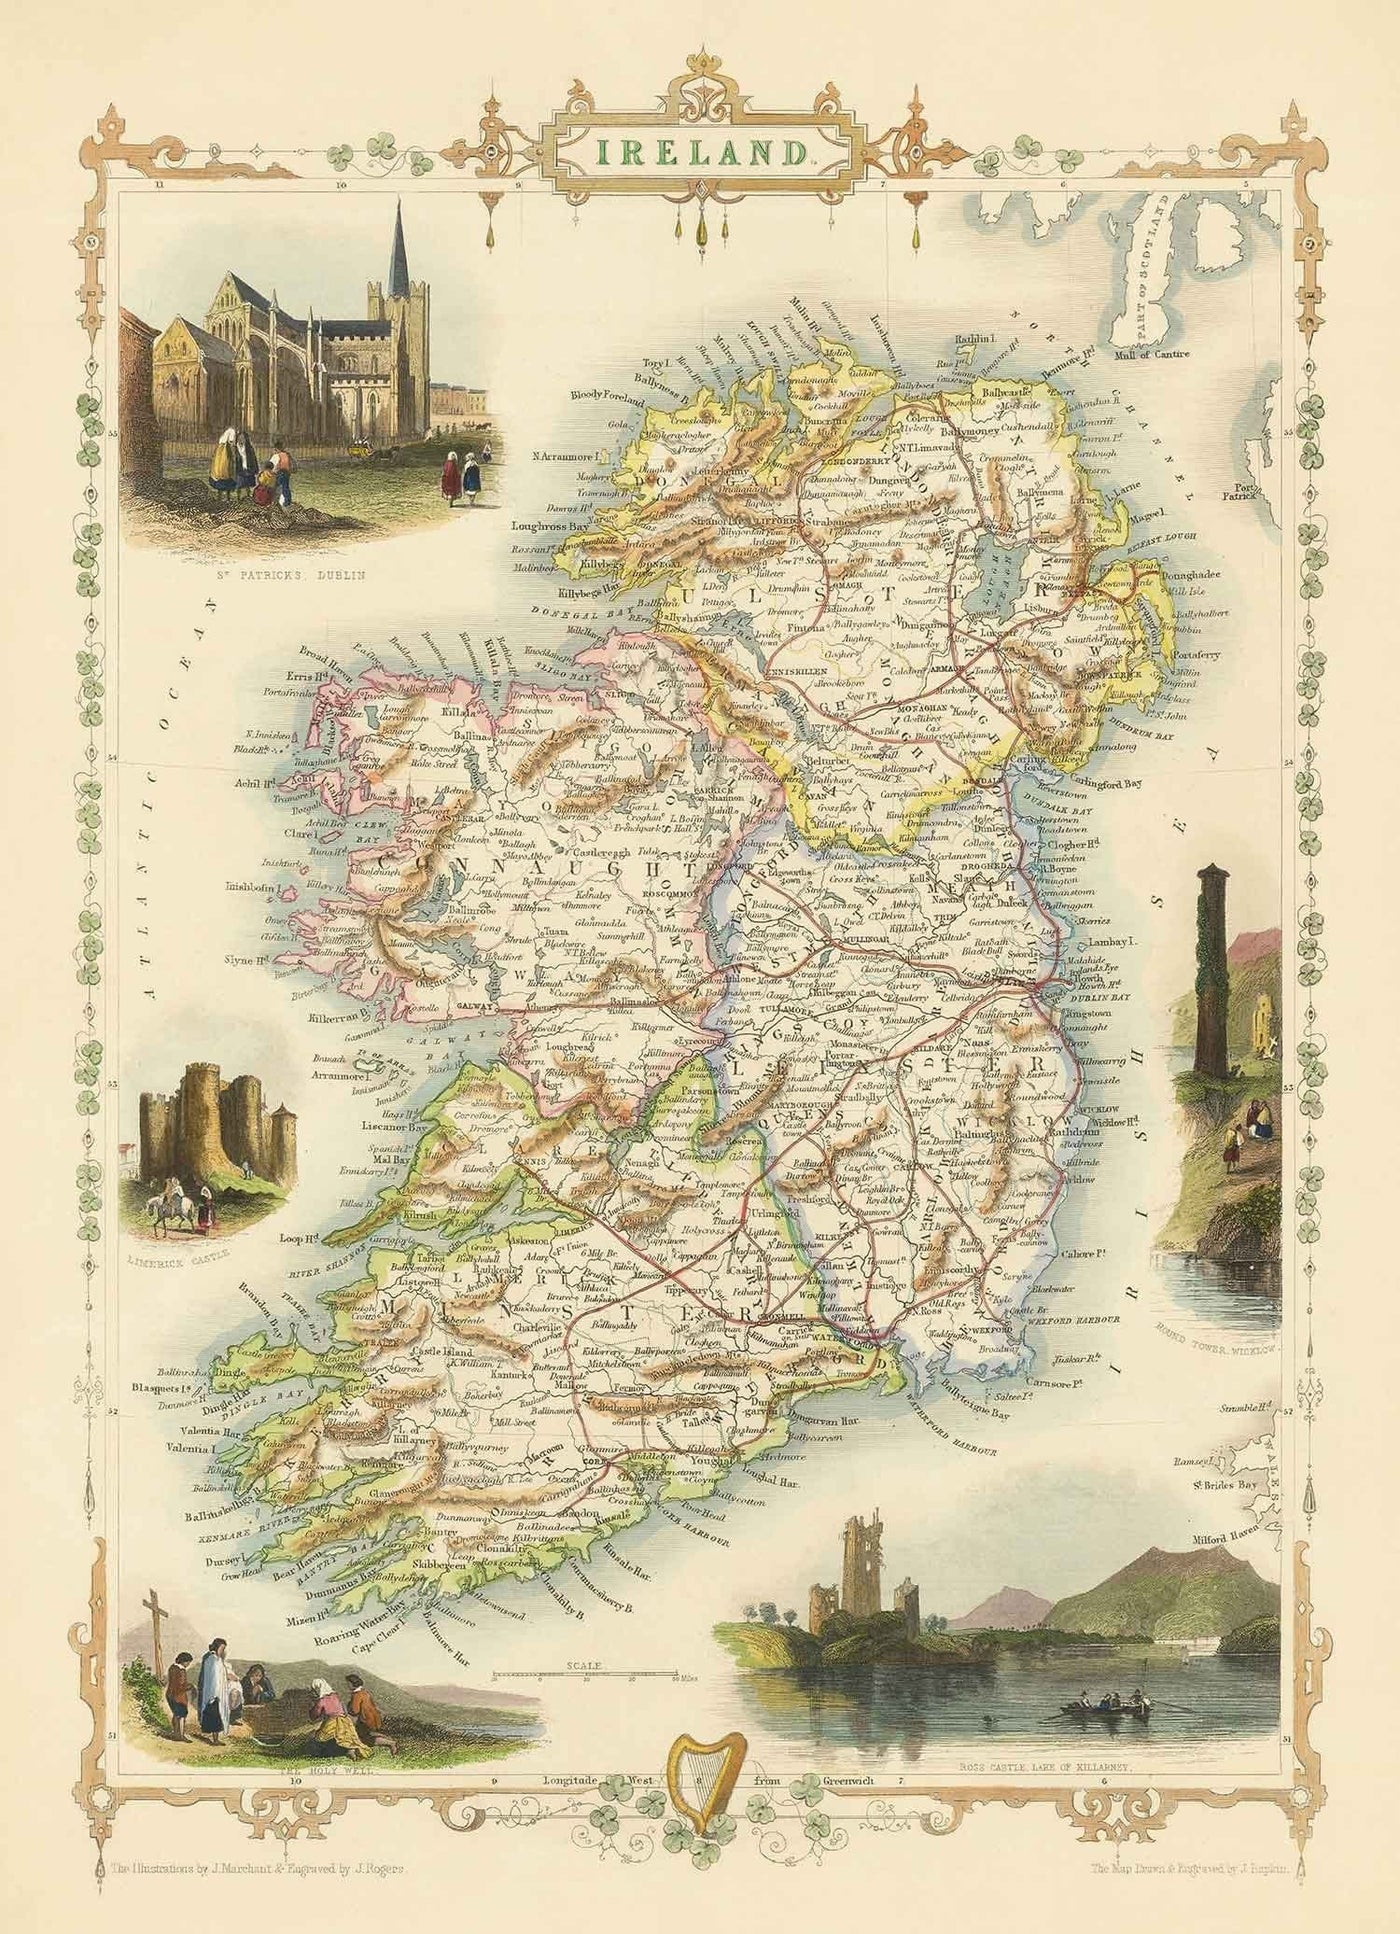 Antiguo mapa de Irlanda, Eire 1851 por Tallis & Rapkin - Provincias, ciudades, Dublín, ferrocarriles coloreados a mano en la época victoriana